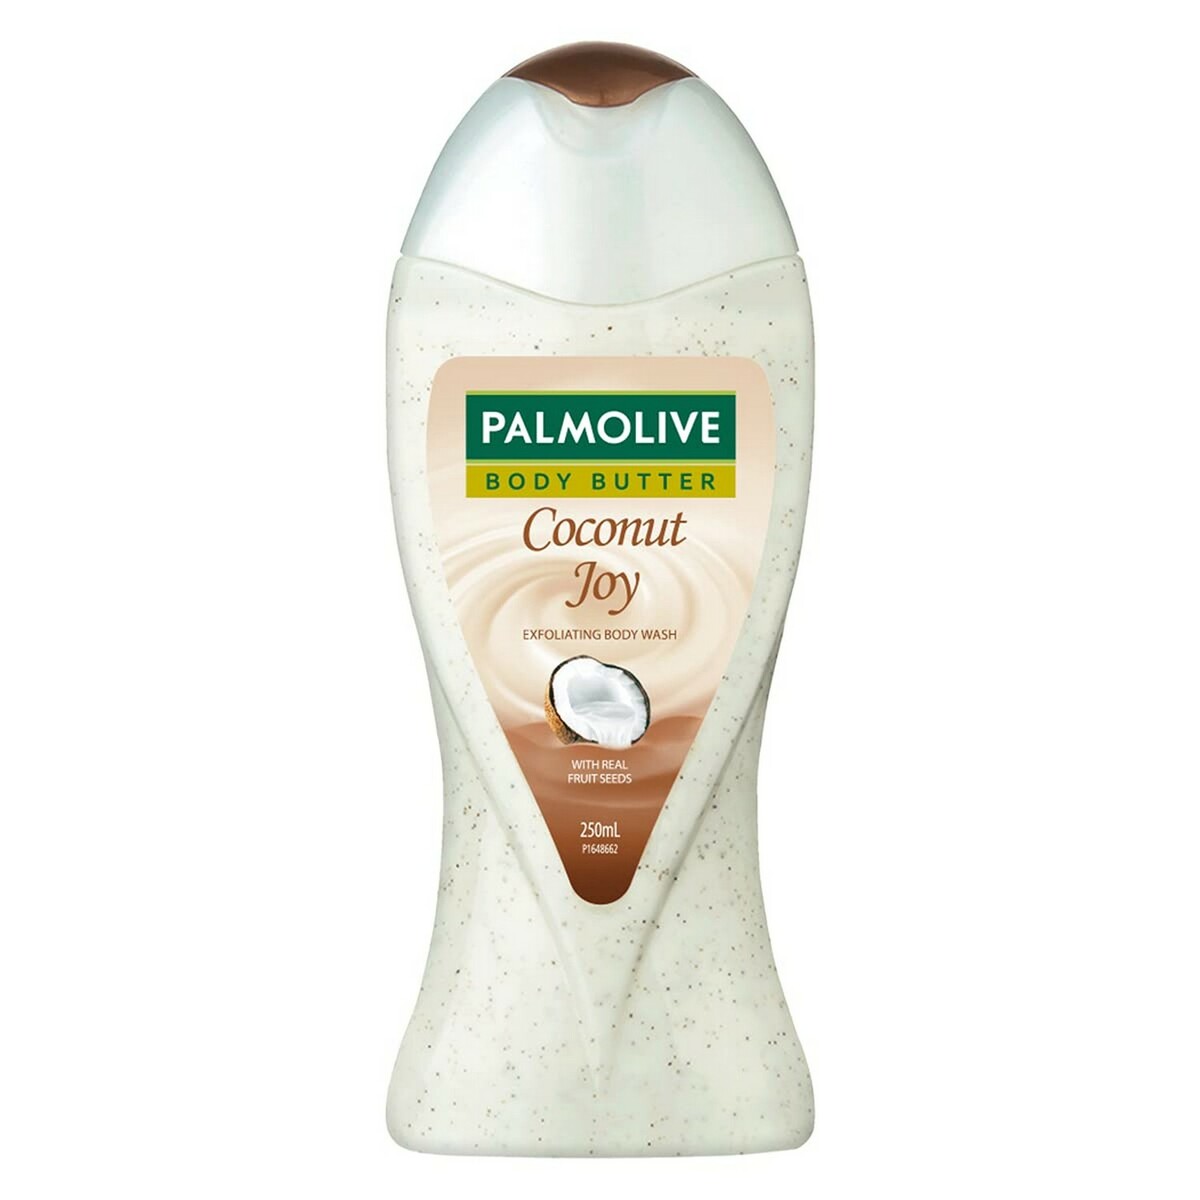 Palmolive  Coconut Joy body butter